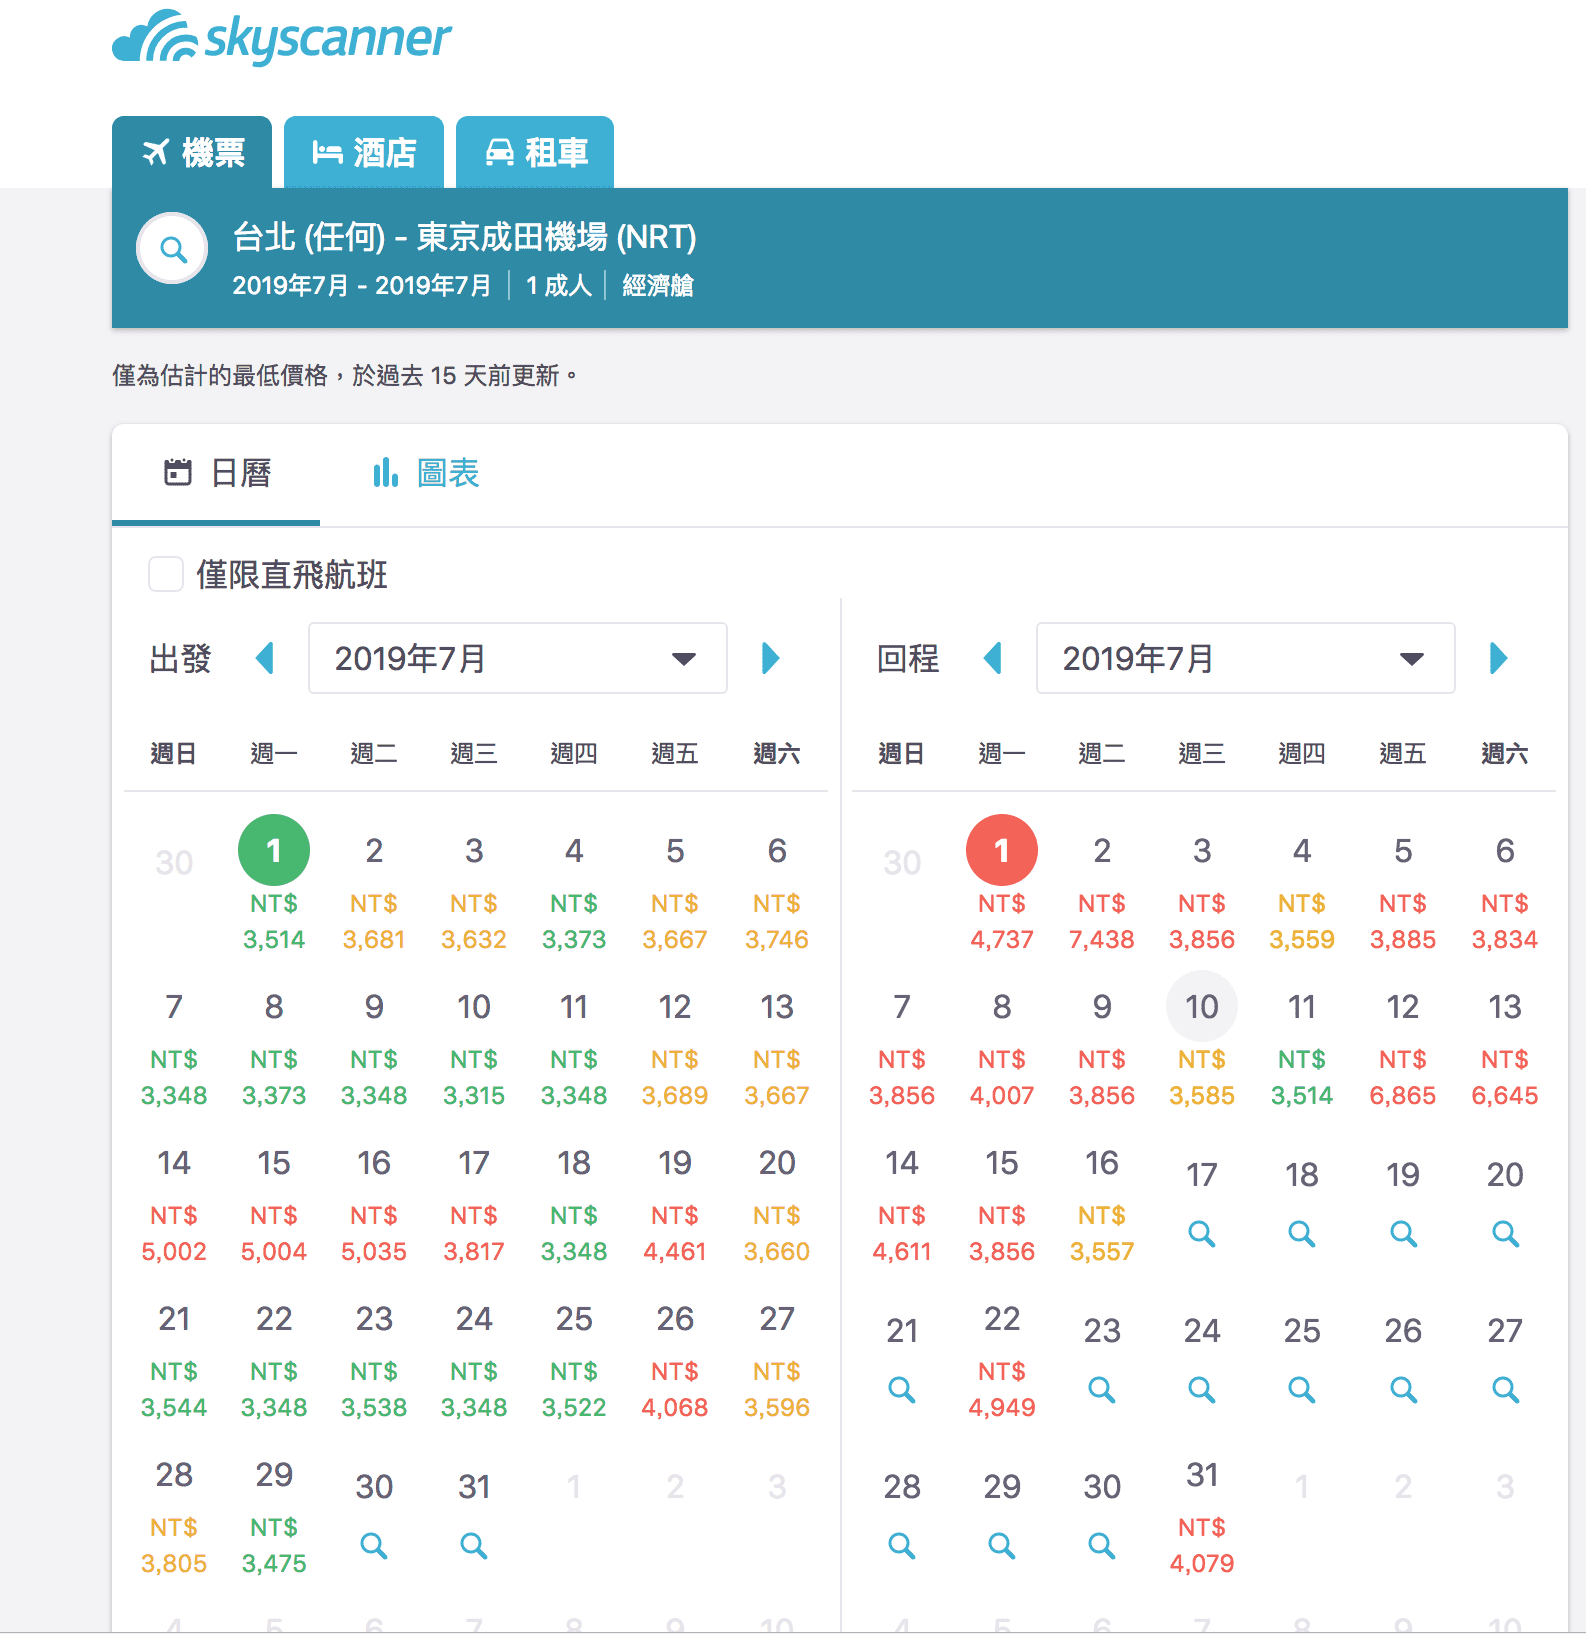 到底官網跟OTA訂票過程以及票價落差在哪裡？2019台北東京暑假機票，酷航可以考慮唷（查票：107.9.2）